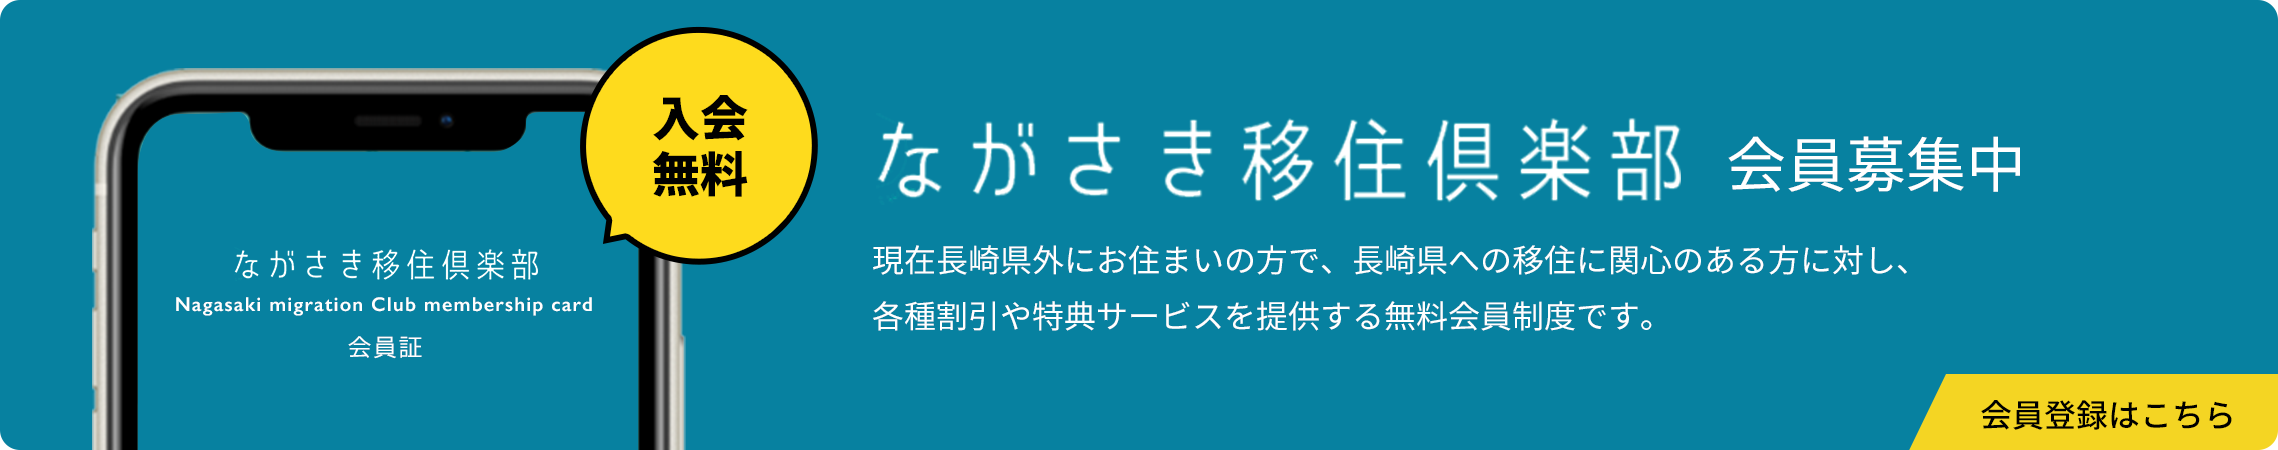 ながさき移住倶楽部 会員募集中 会員登録はこちら 現在長崎県外にお住まいの方で、長崎県への移住に関心のある方に対し、 各種割引や特典サービスを提供する無料会員制度です。入会無料